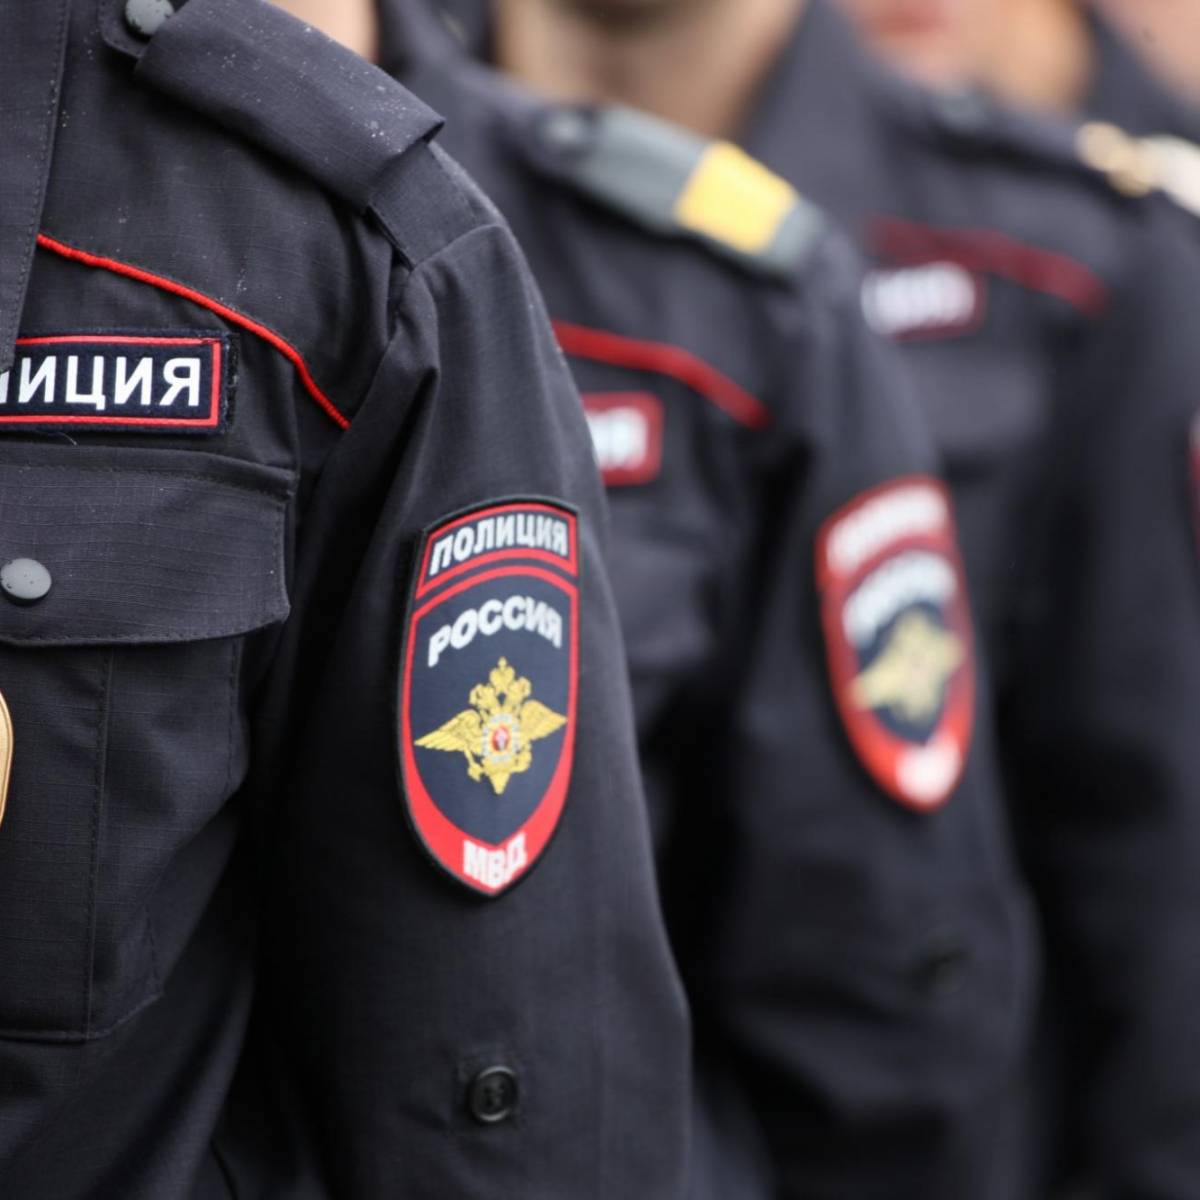 Госдума разрешит полиции вскрывать авто - для борьбы с мажорами и Майданом